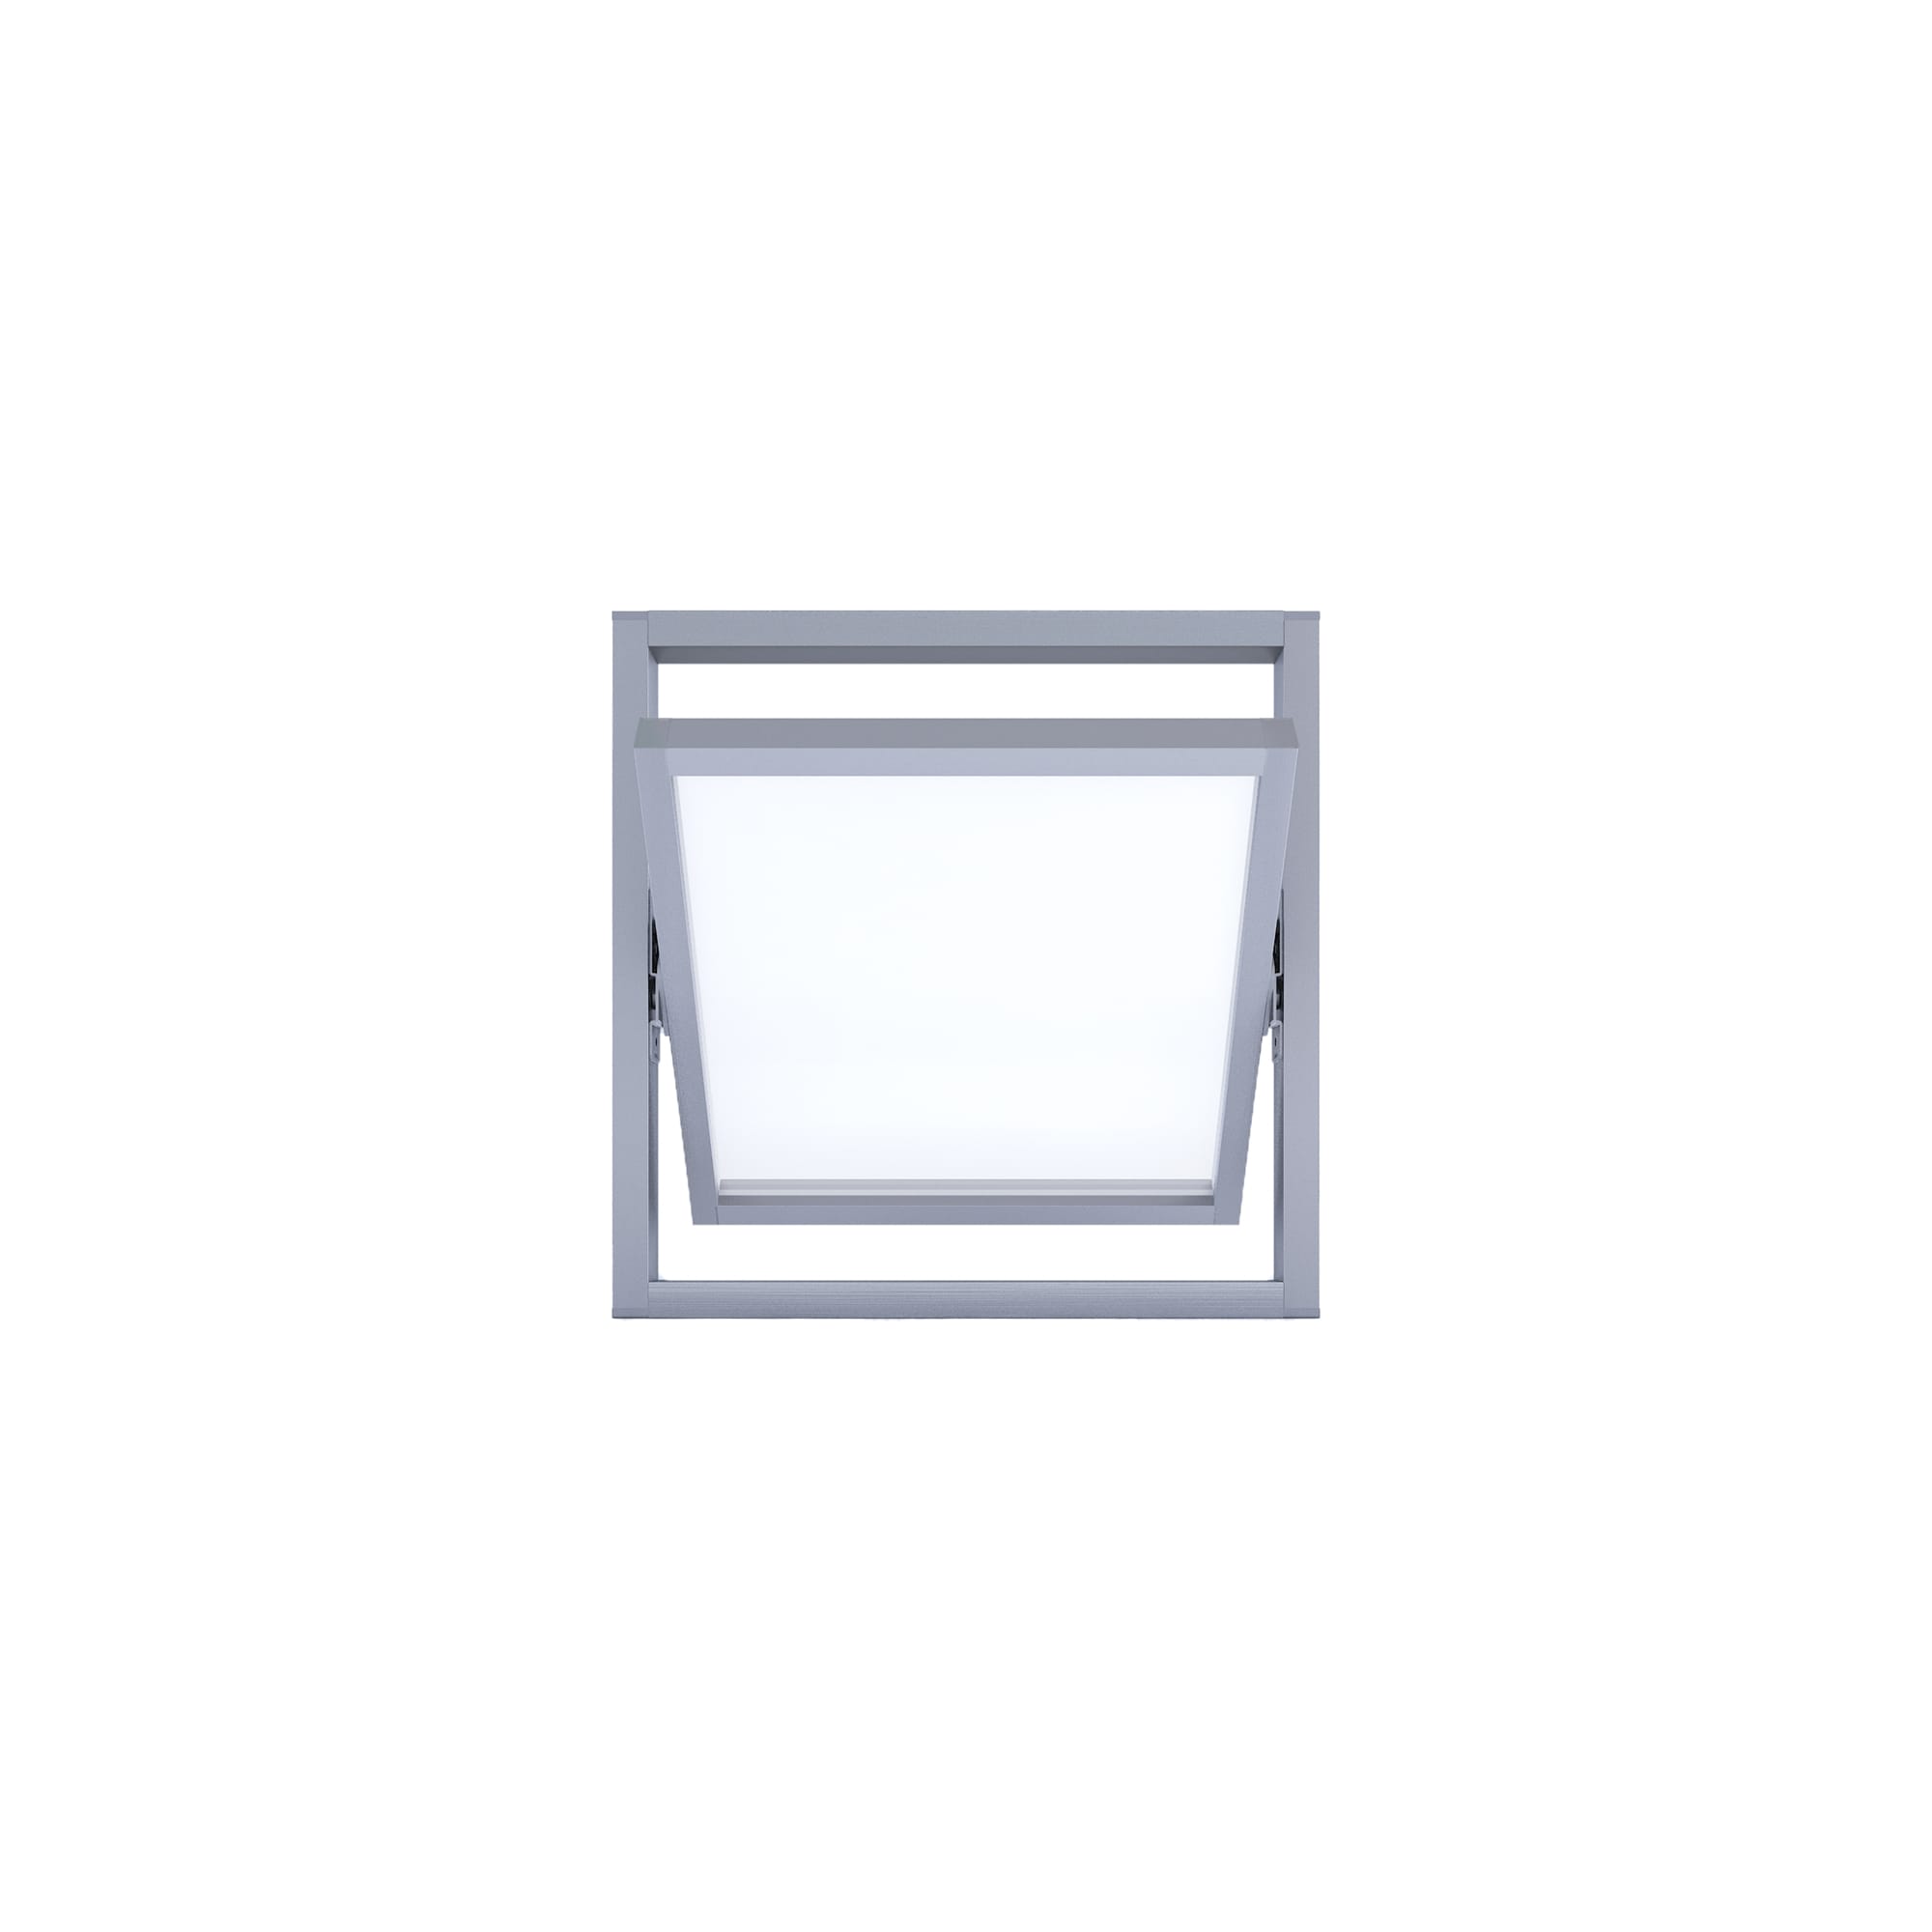 室内アルミサッシ 回転窓 シルバー 樹脂パネル DW-DR013-08-G201